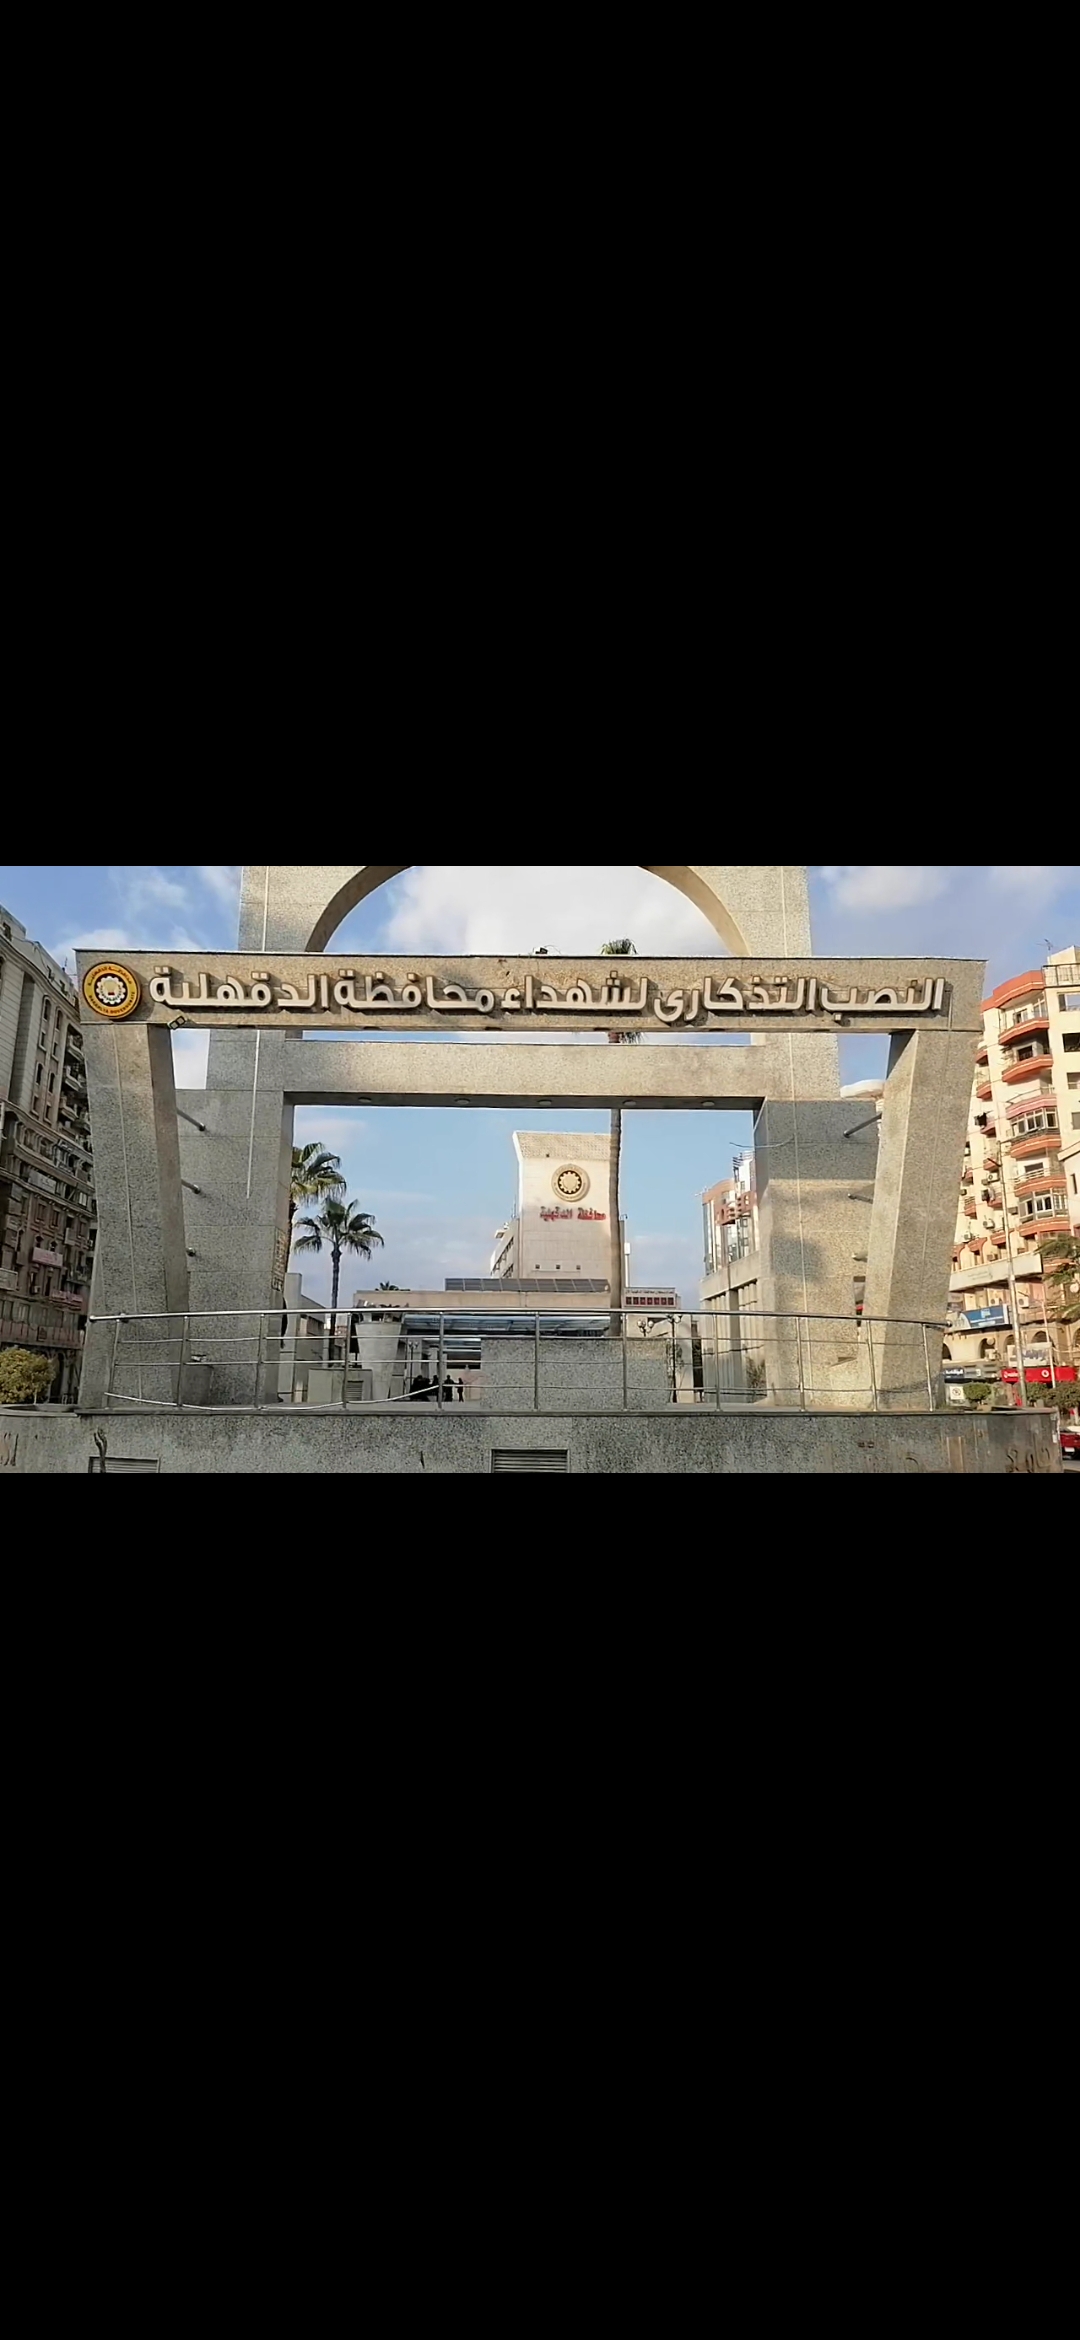 النصب التذكاري بجوار ميدان عام المحافظة